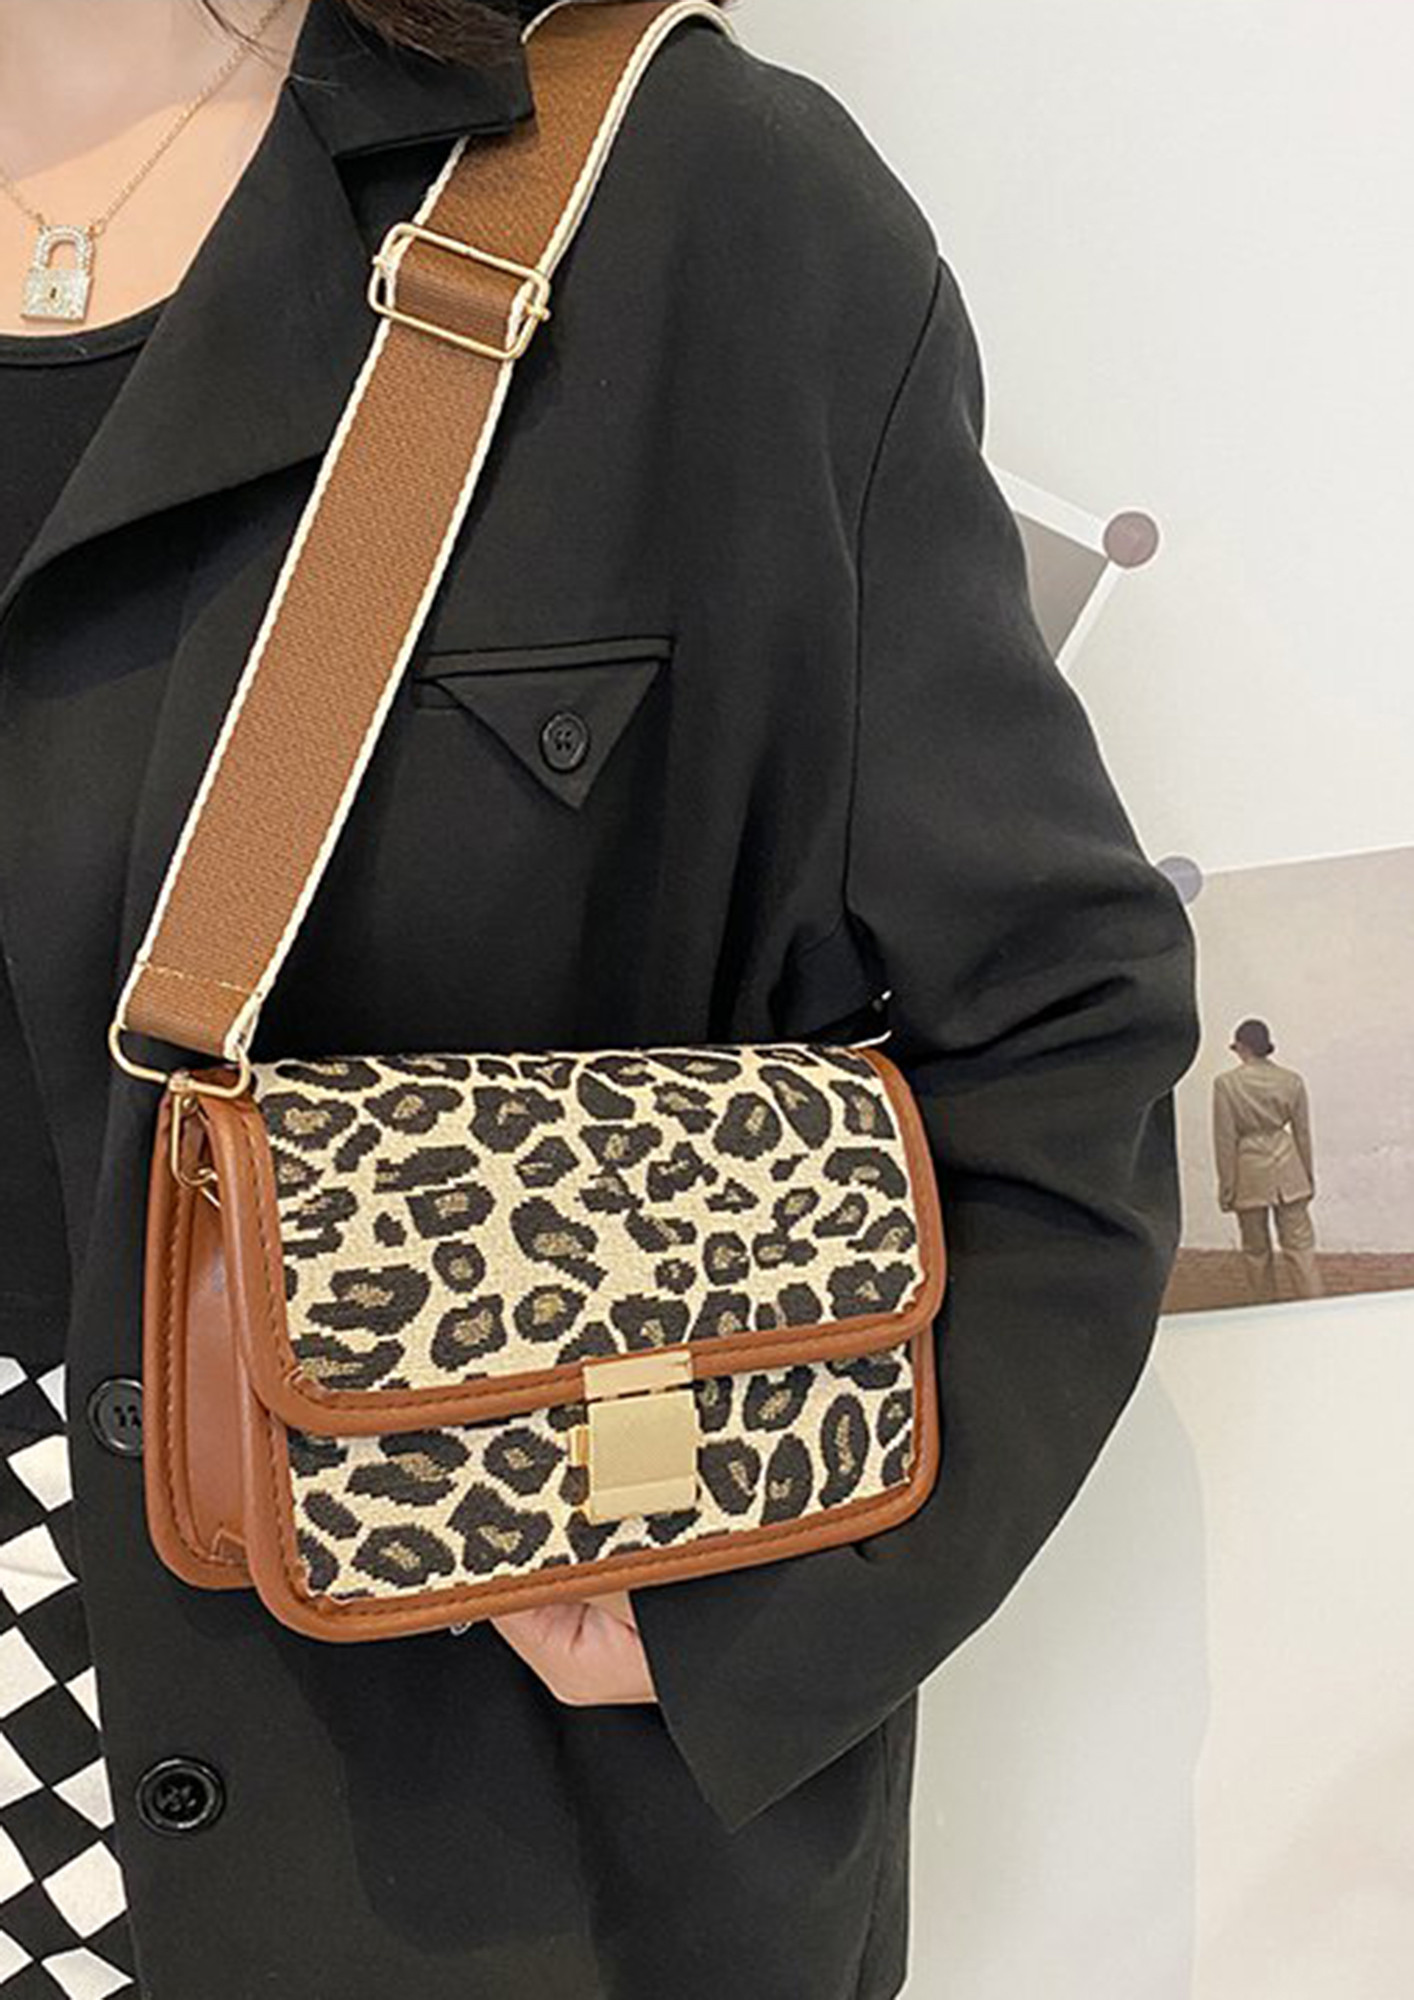 Buy Leopard Handbag Online In India -  India